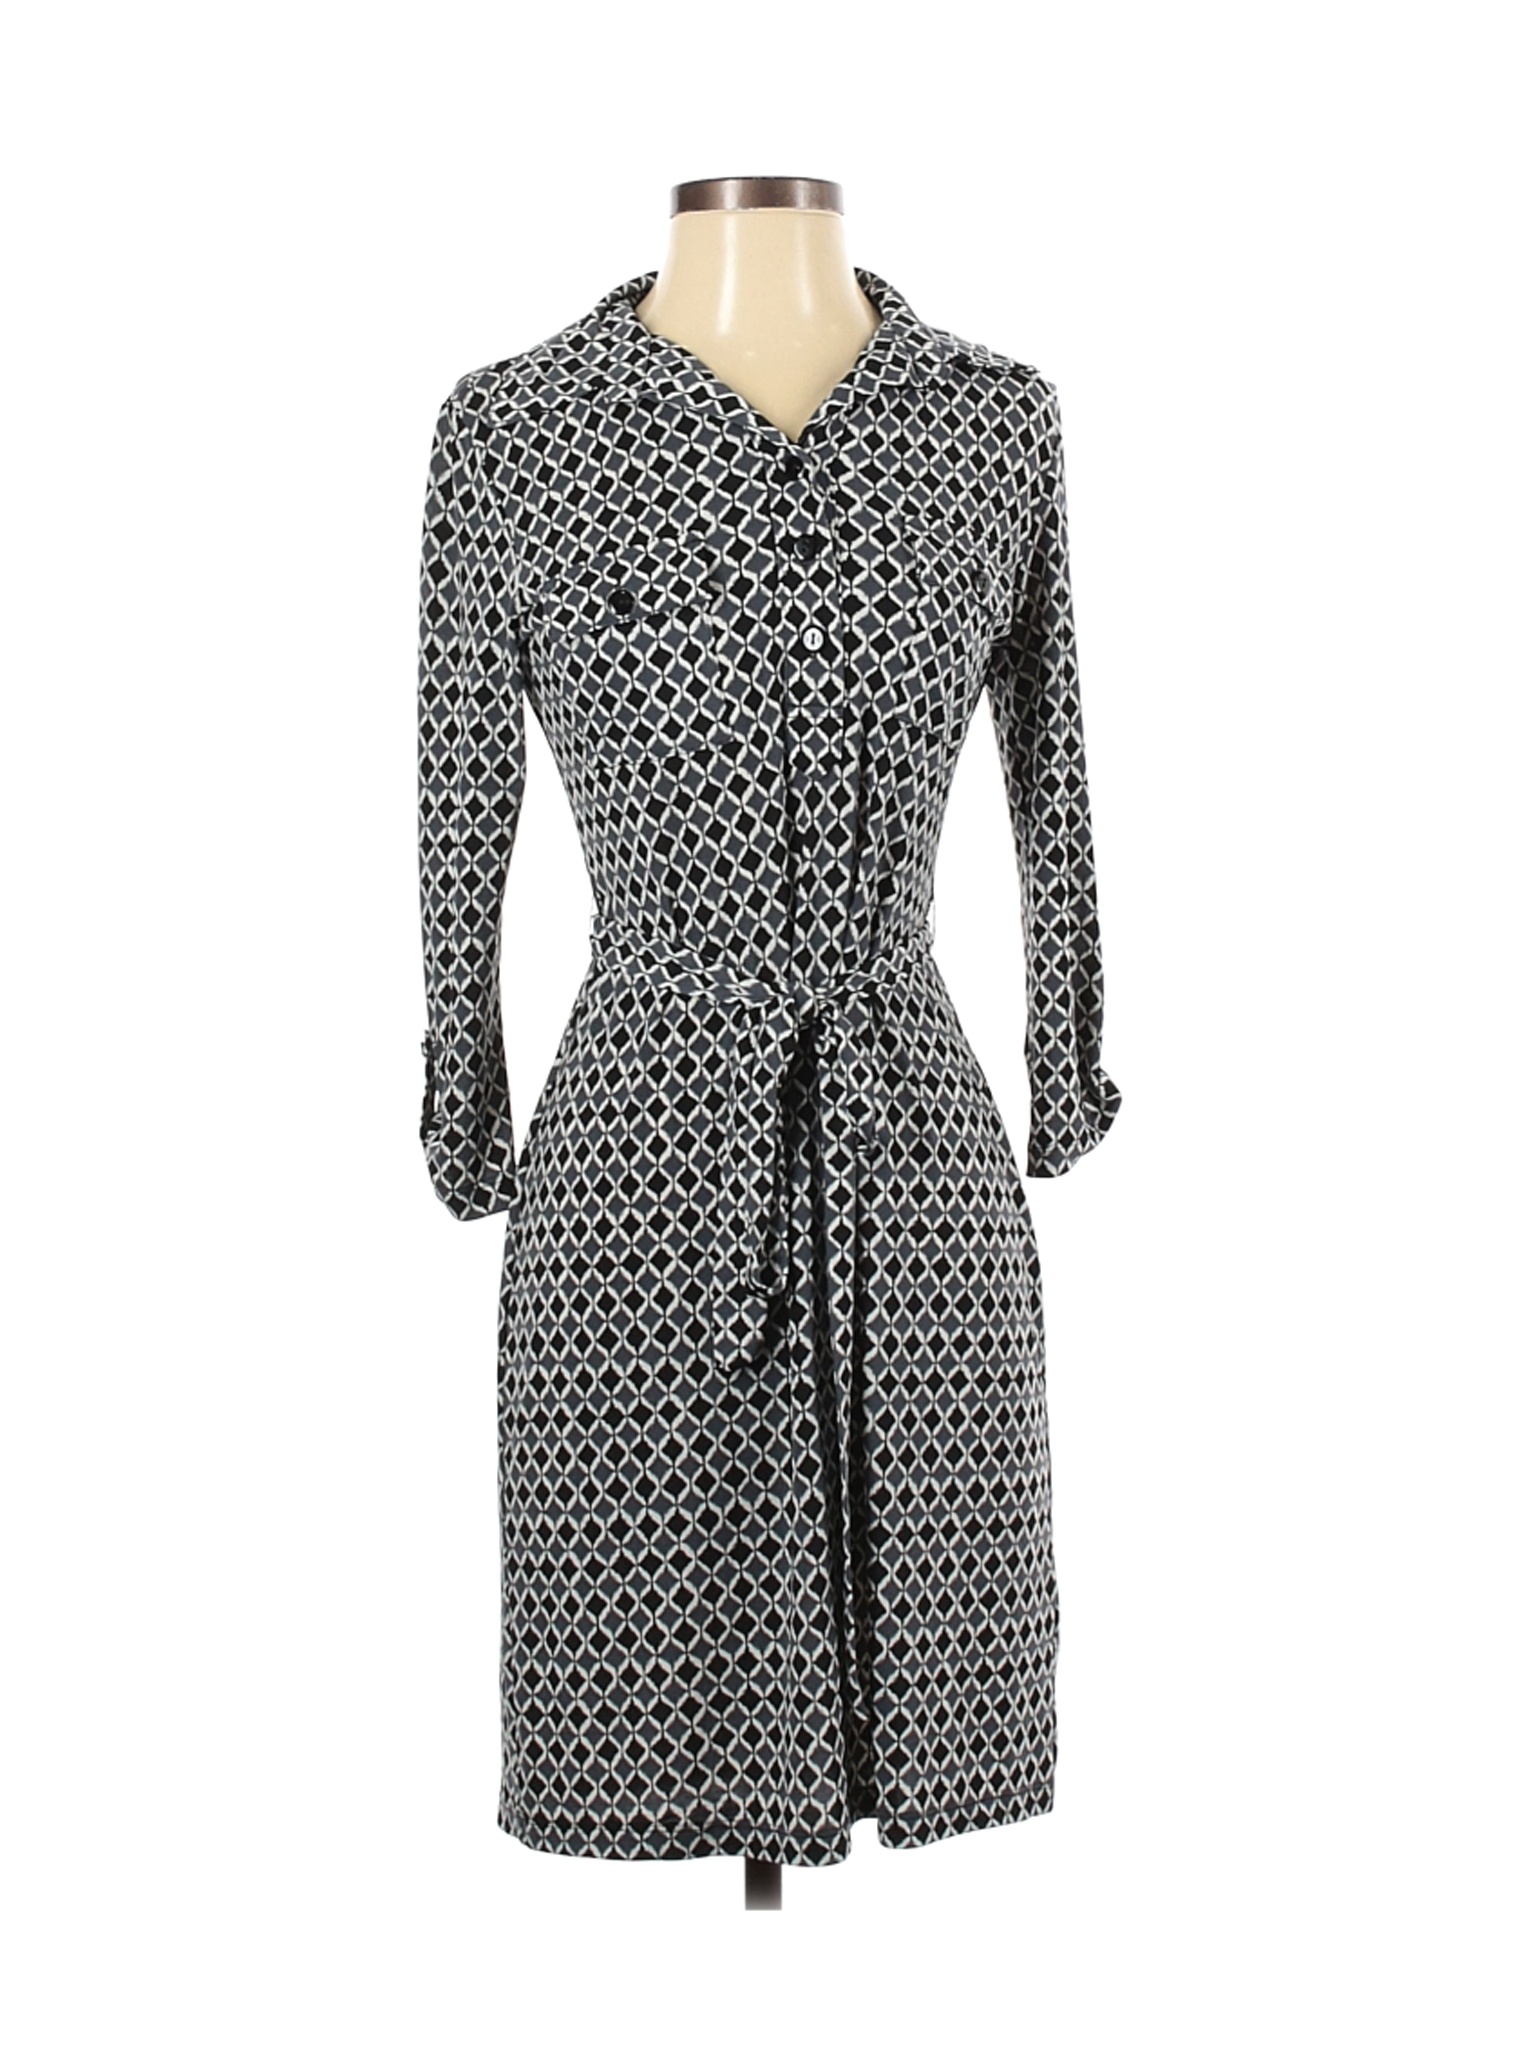 Carole Little Women Gray Casual Dress 4 | eBay